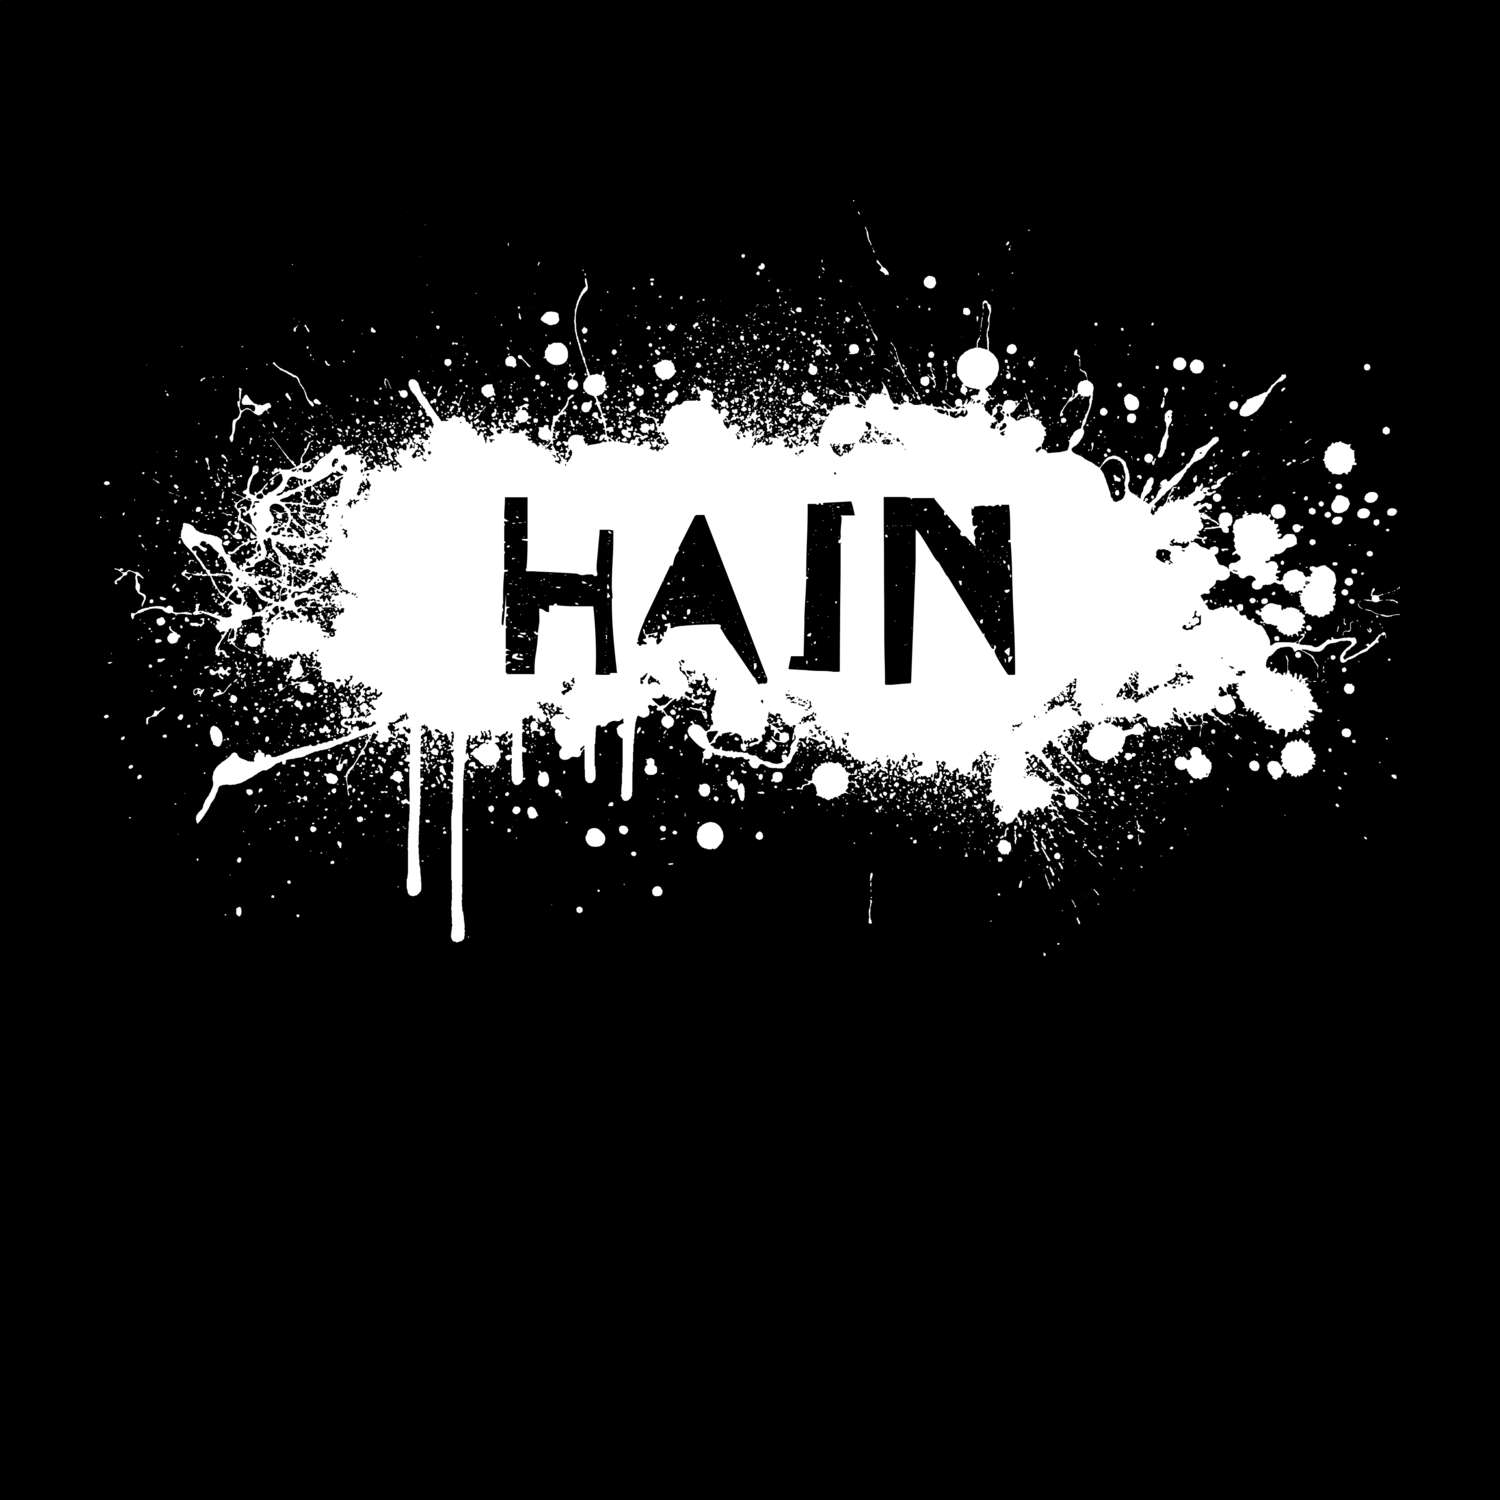 Hain T-Shirt »Paint Splash Punk«